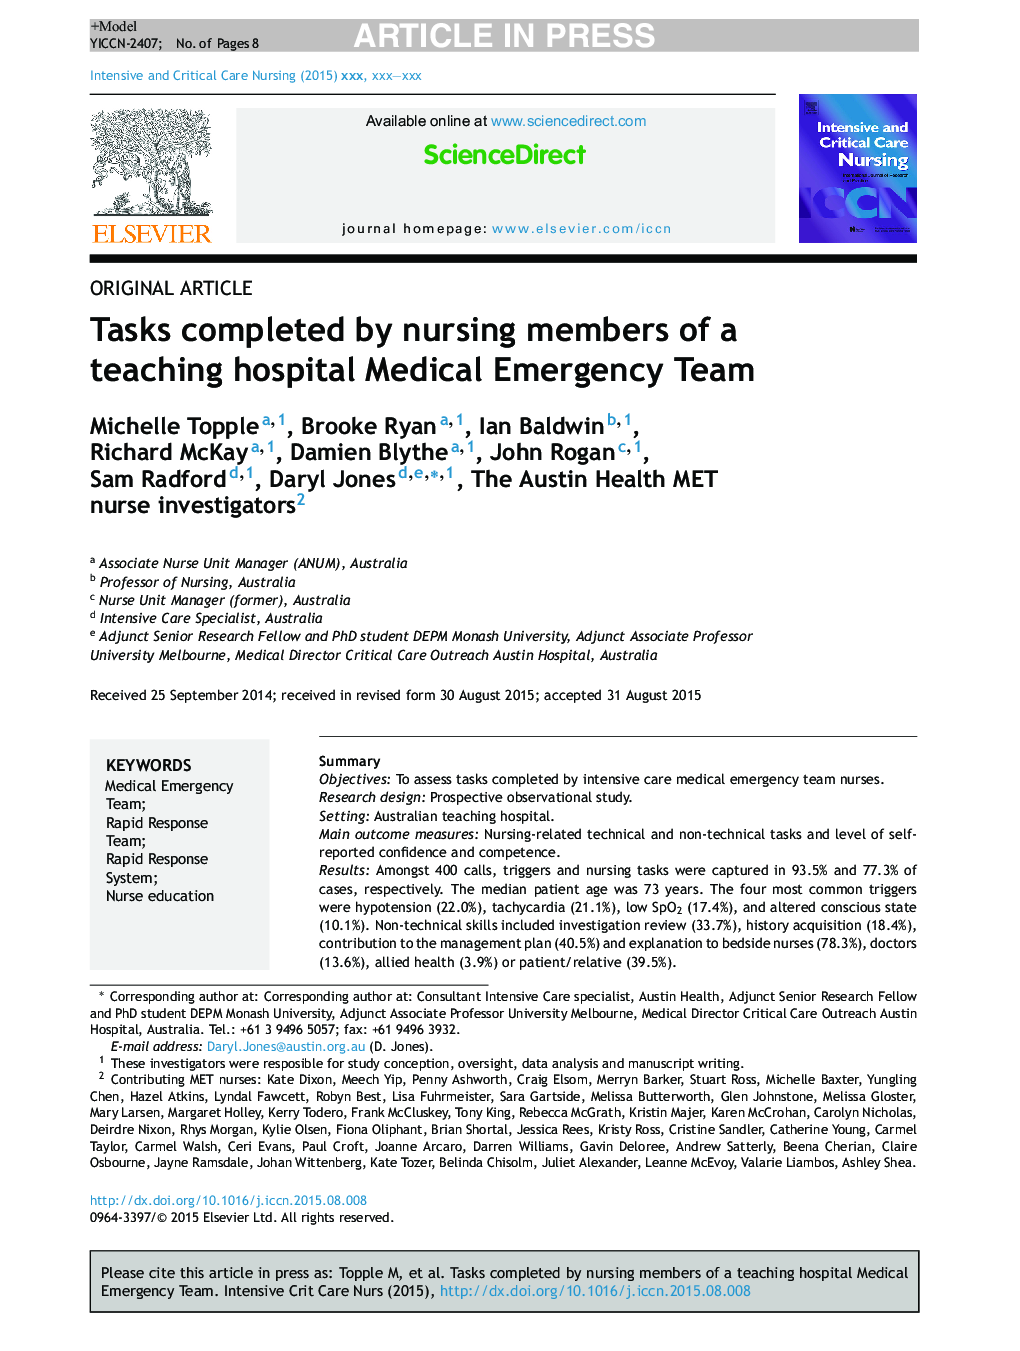 Tasks completed by nursing members of a teaching hospital Medical Emergency Team